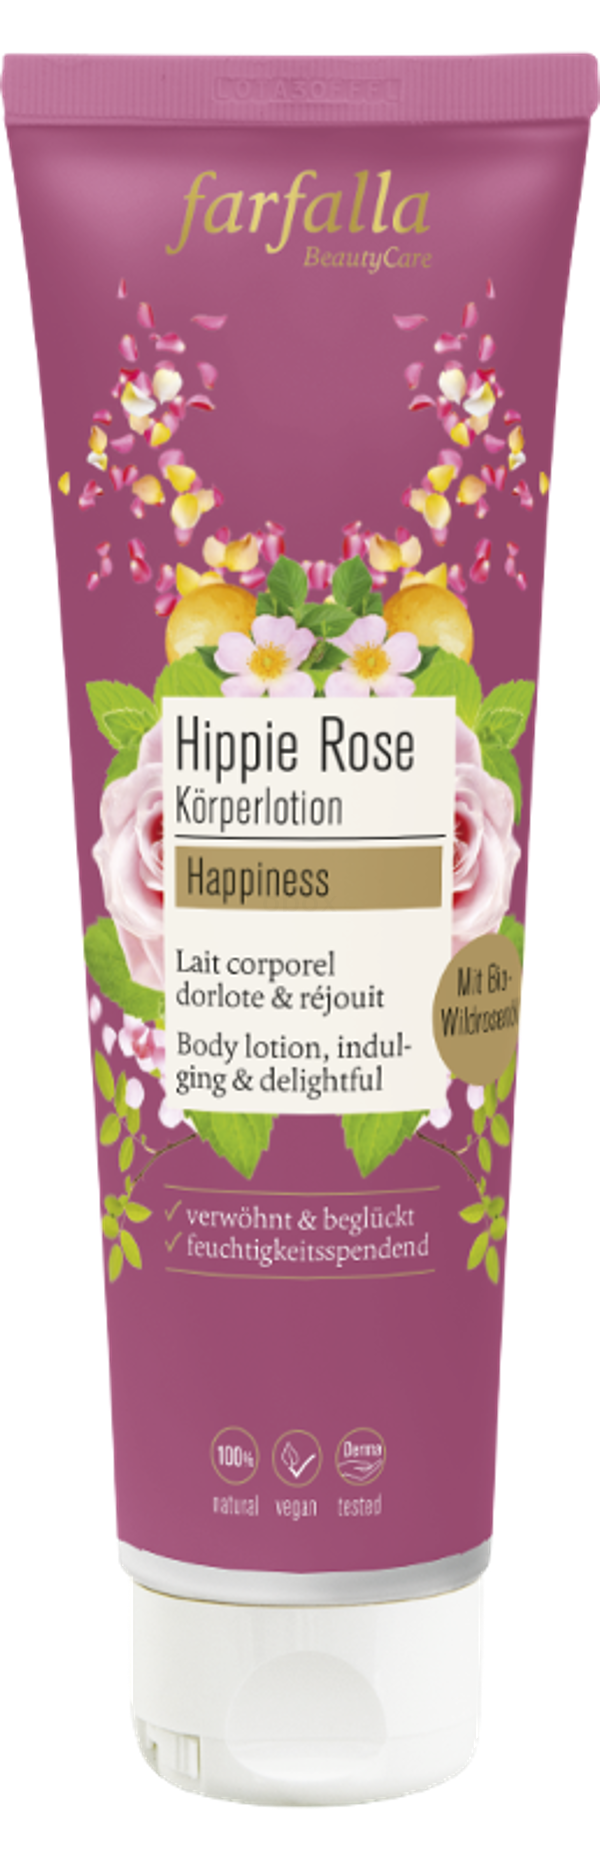 Produktfoto zu Hippie Rose Körperlotion